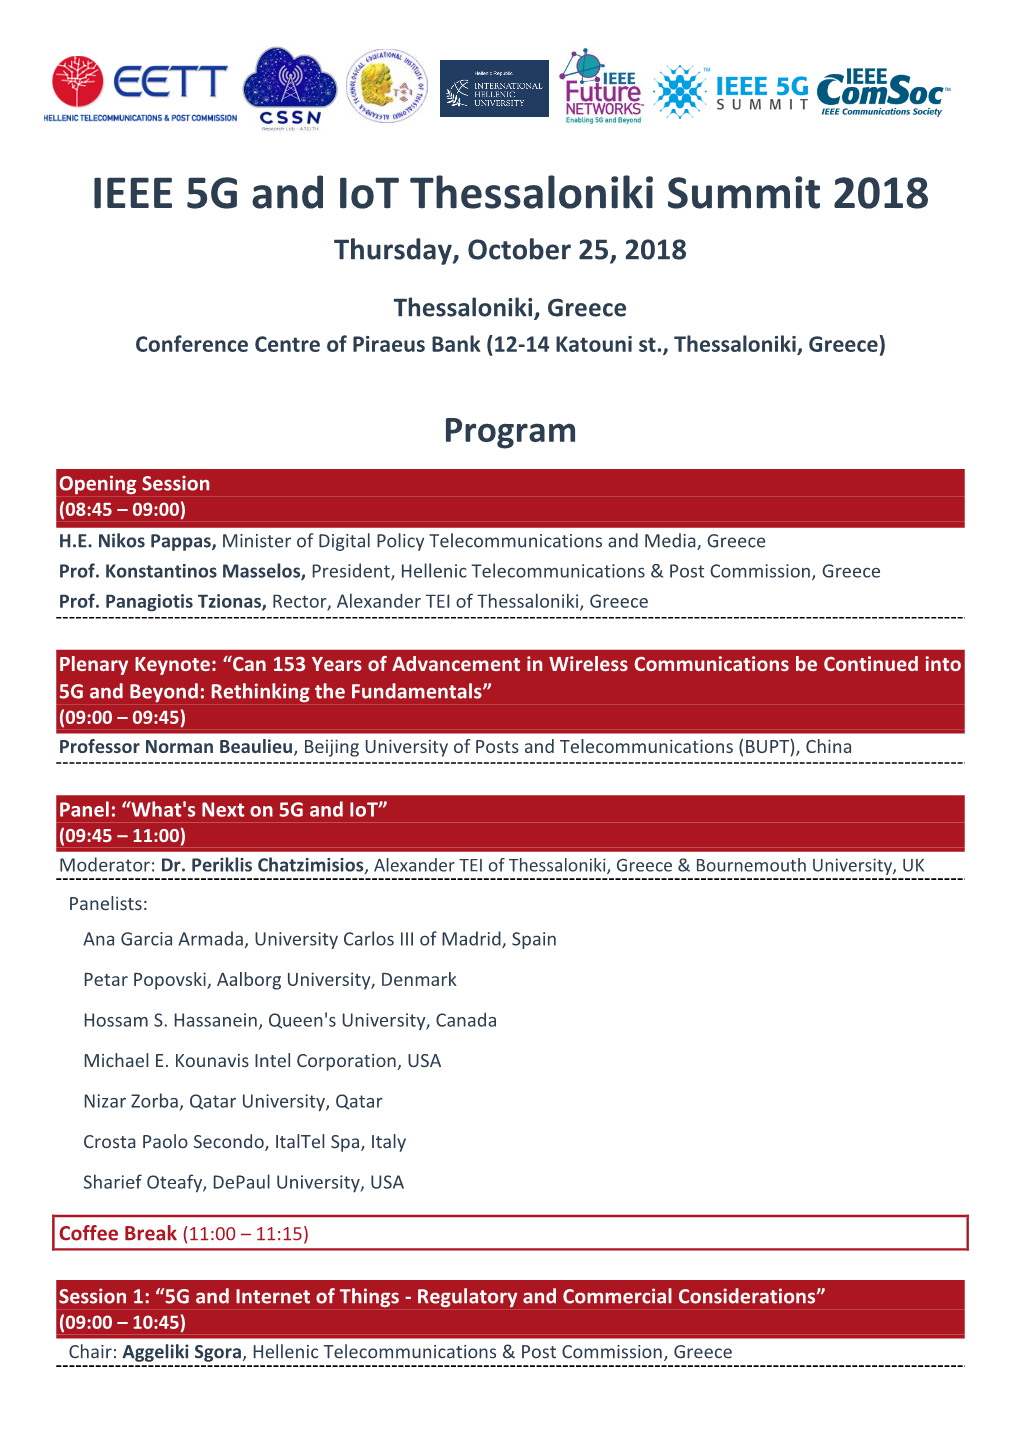 IEEE 5G and Iot Thessaloniki Summit 2018 Thursday, October 25, 2018